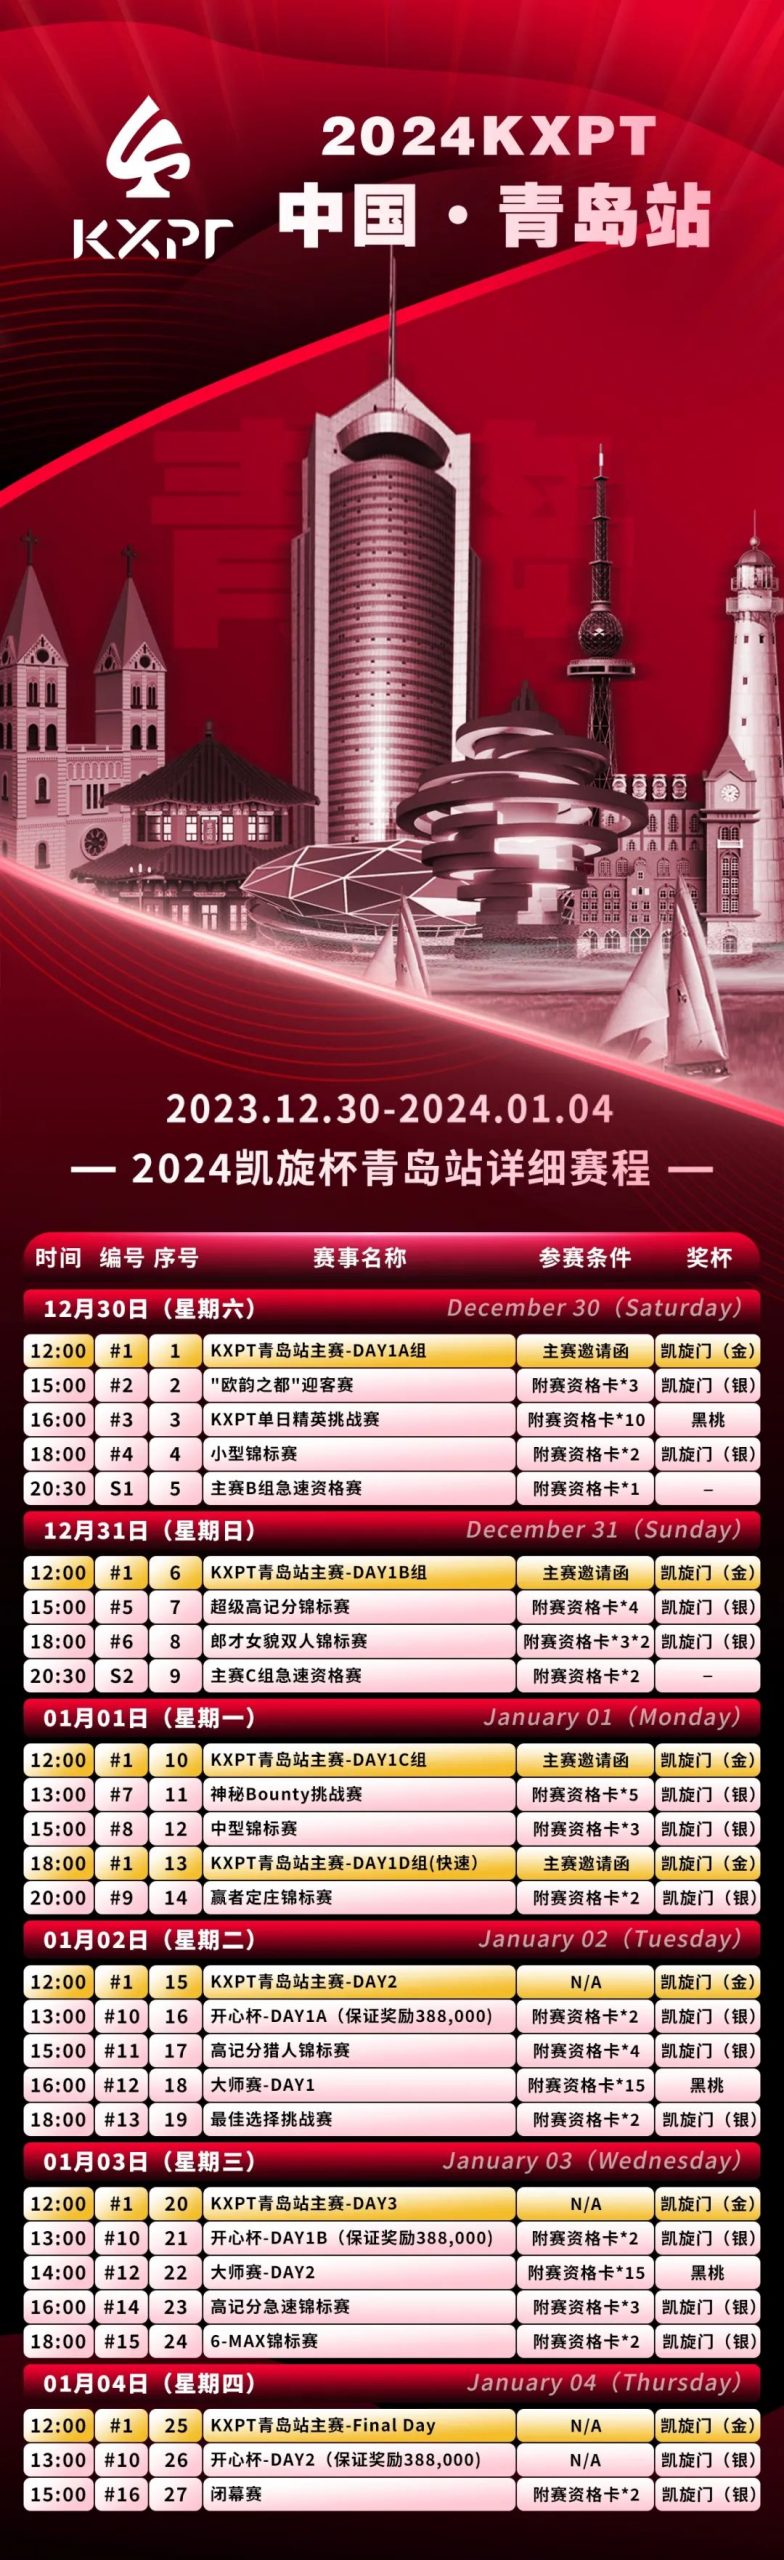 【EV 扑克】赛事信息丨 2024KXPT 凯旋杯青岛选拔赛详细赛程赛制发布